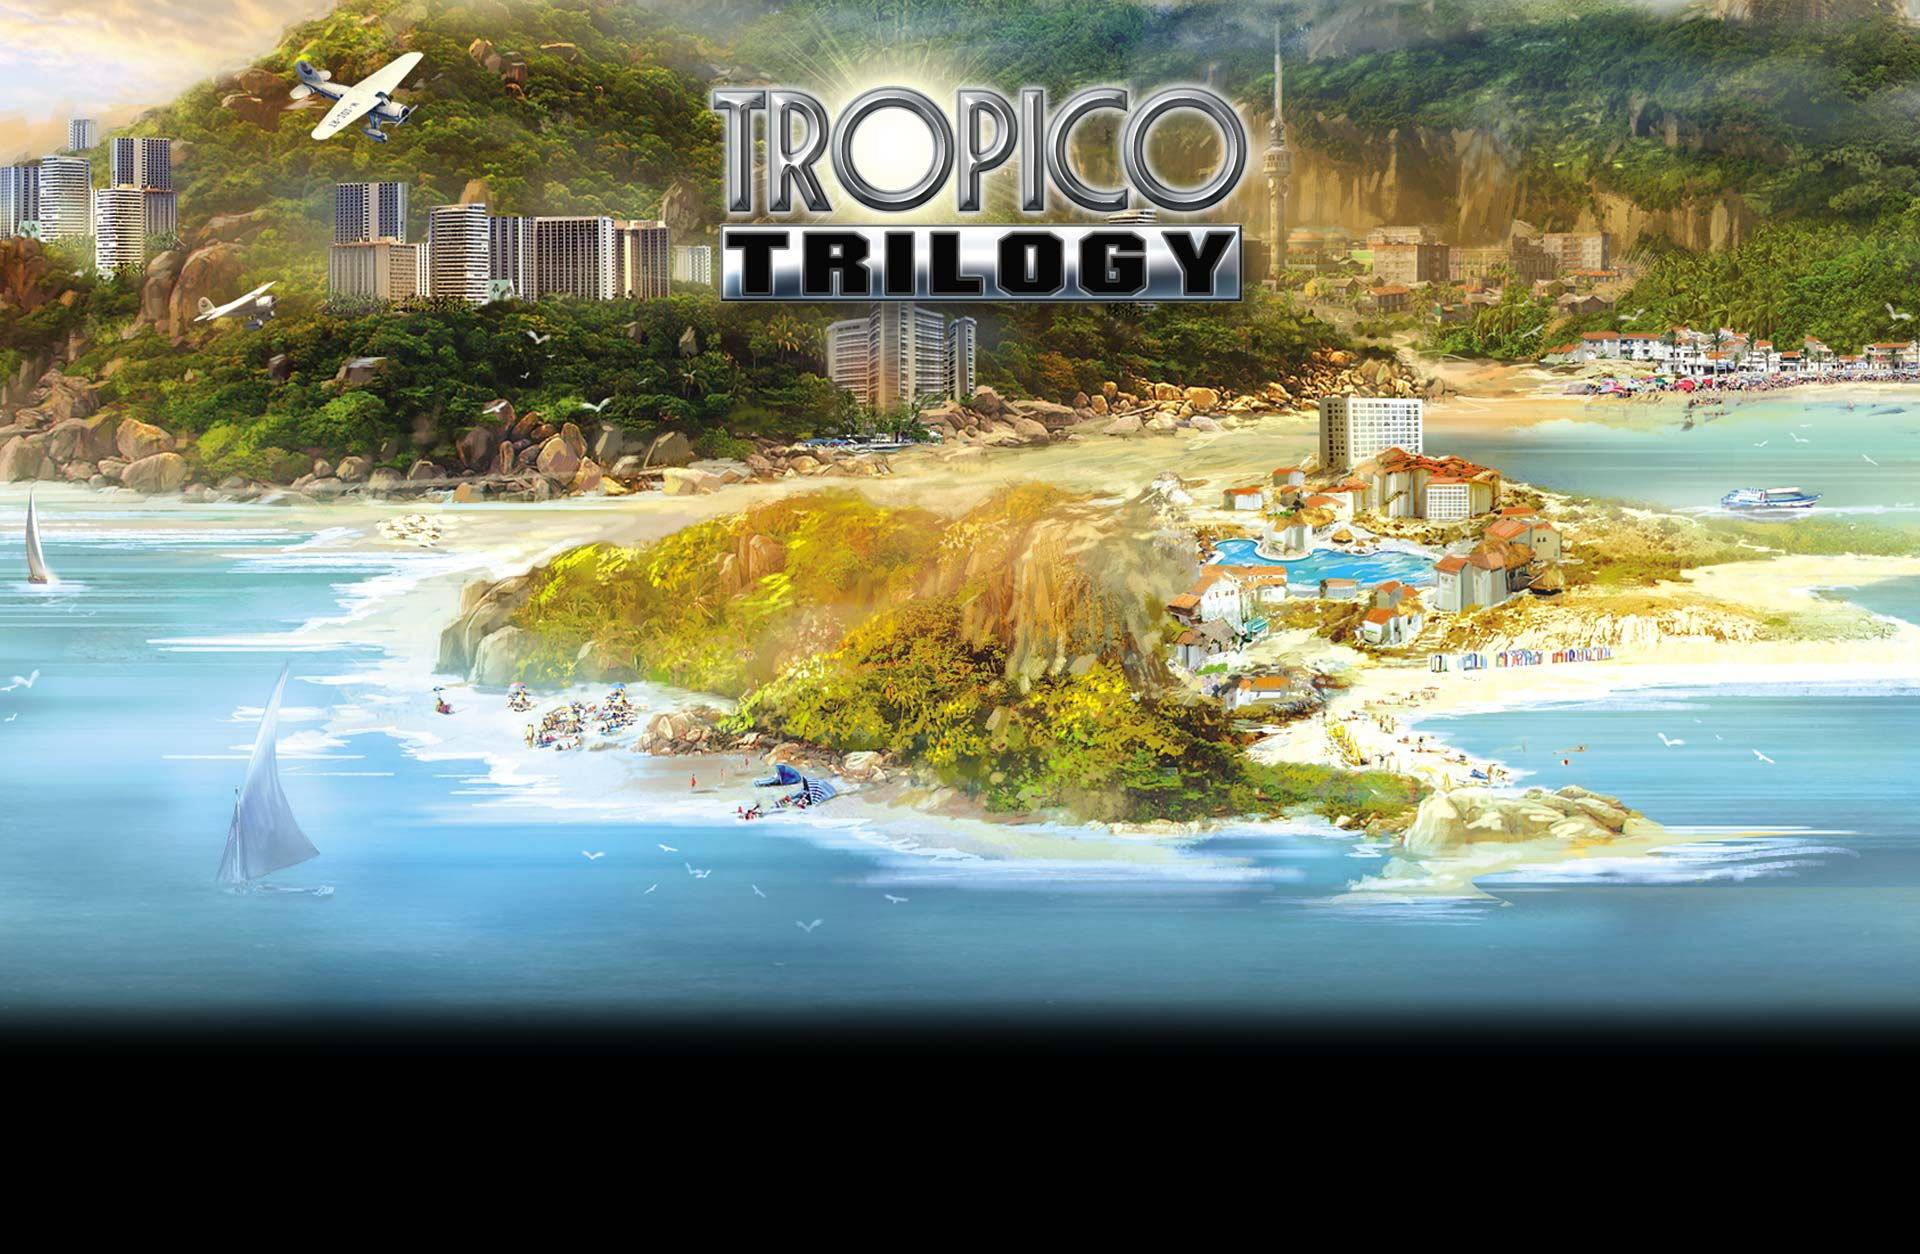 Tropico Trilogy